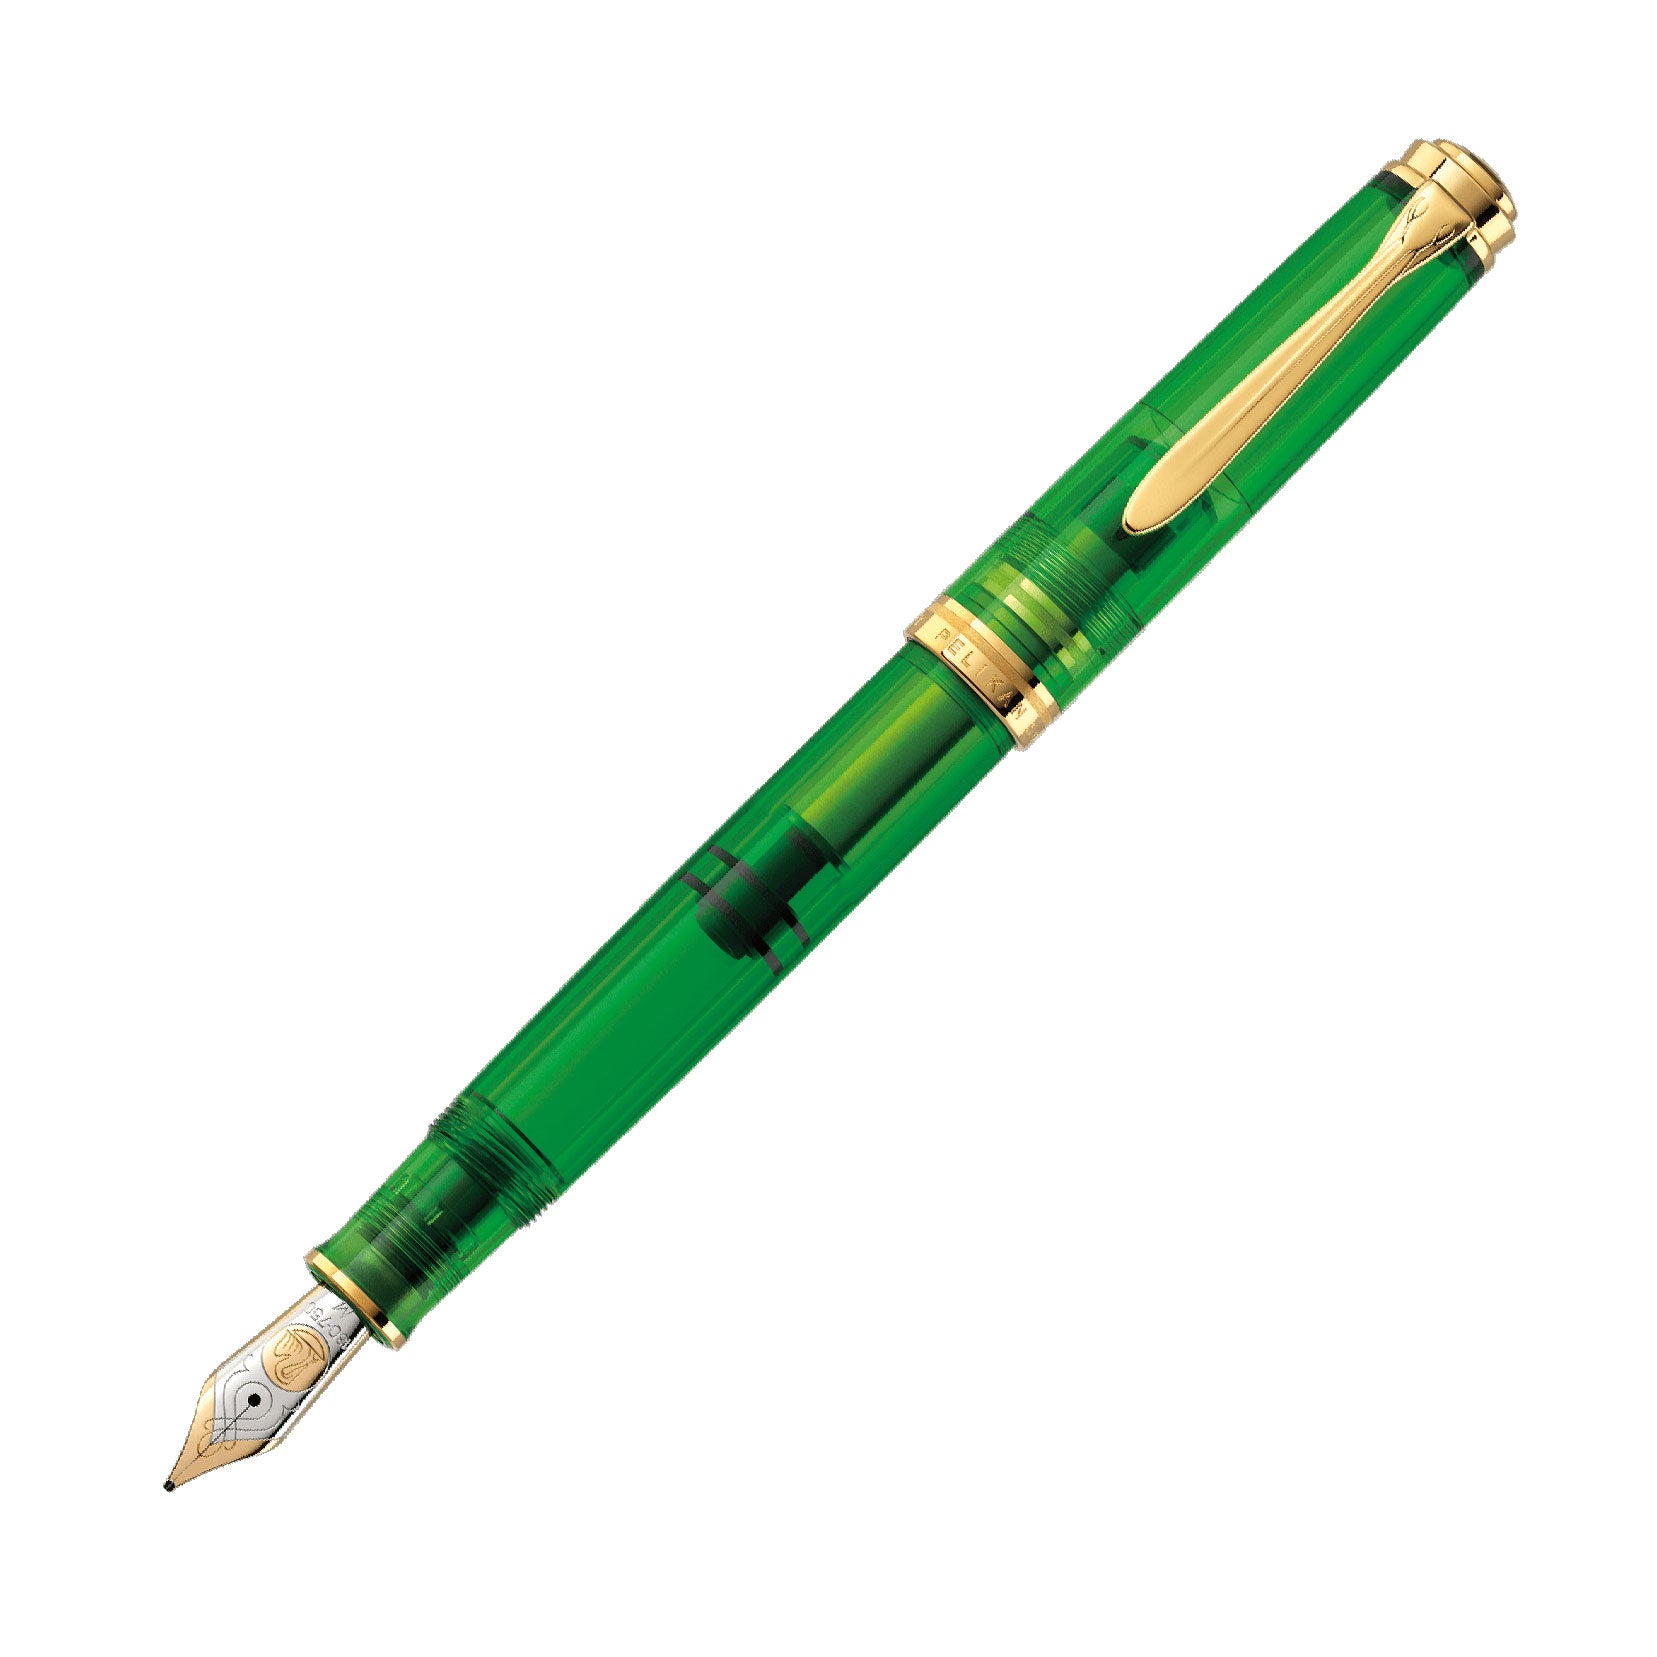 Pelikan Souveran 800 Special Edition Fountain Pen Green Demonstrator